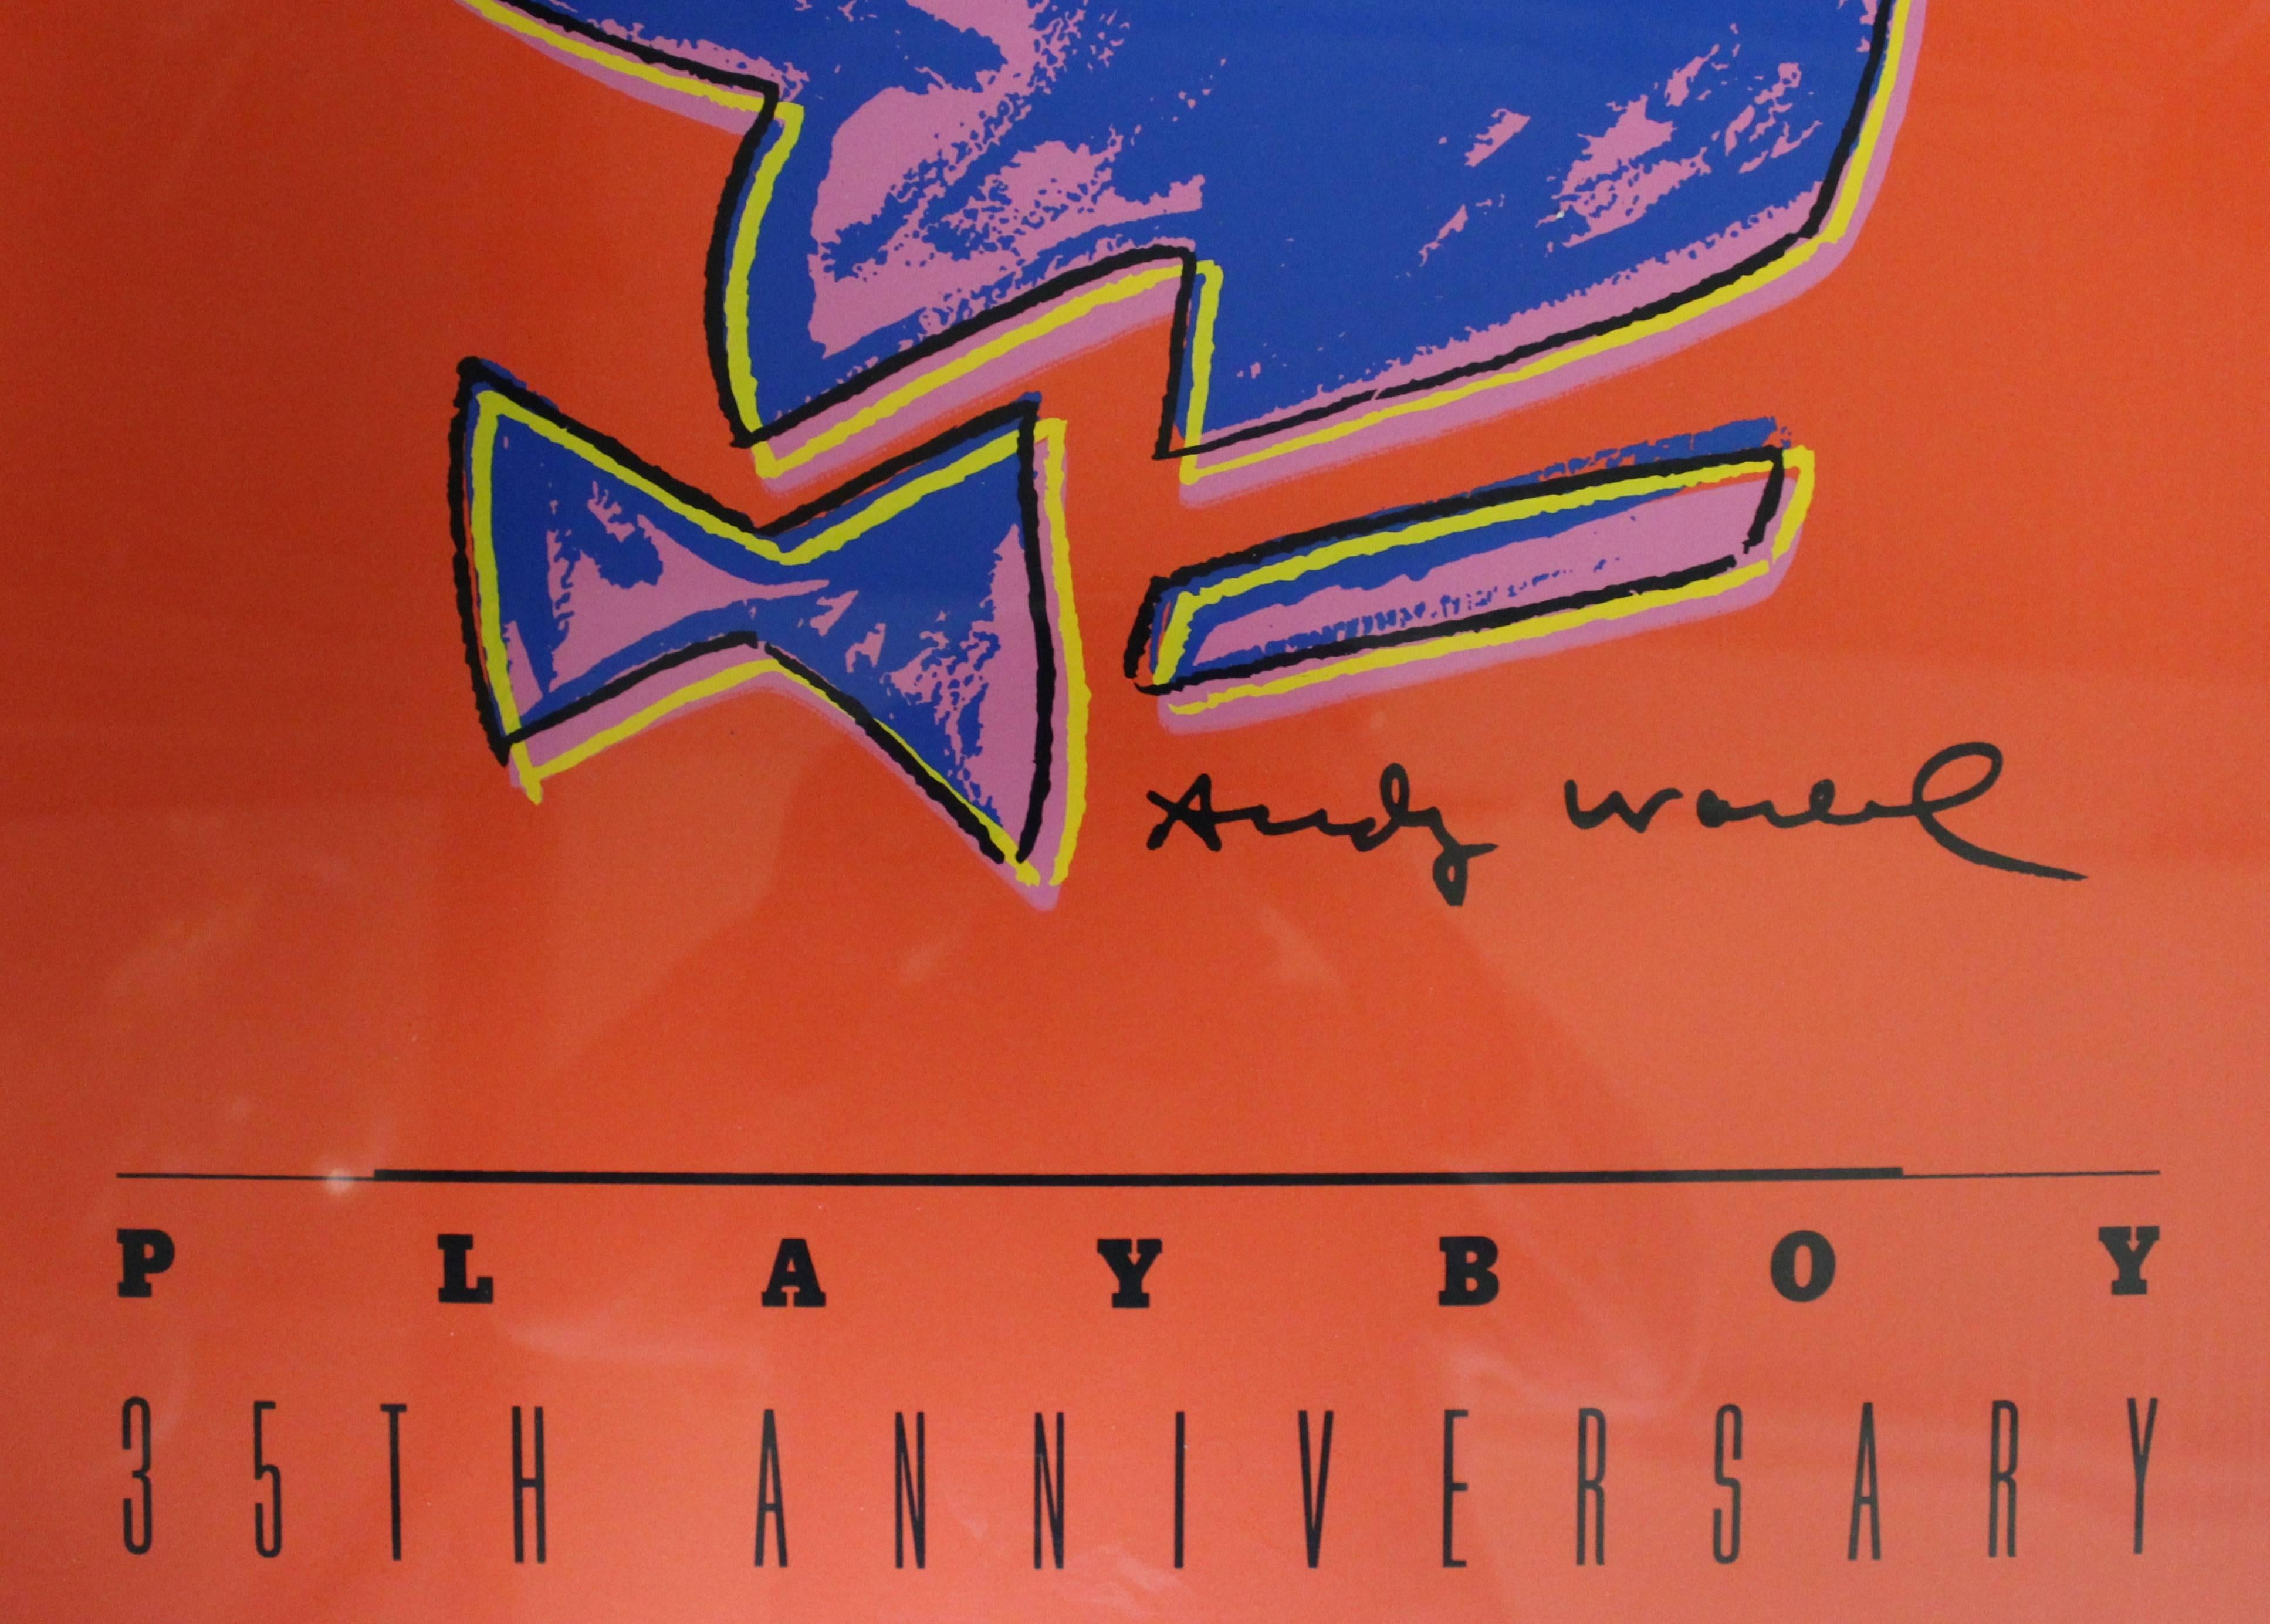 Affiche du 35e anniversaire d'Andy Warhol Playboy.
Il s'agit d'une édition limitée d'une sérigraphie à la main en cinq couleurs sur papier d'archives publiée par Special Editions Limited et Mirage Editions Inc, Santa Monica, Californie. Copyright